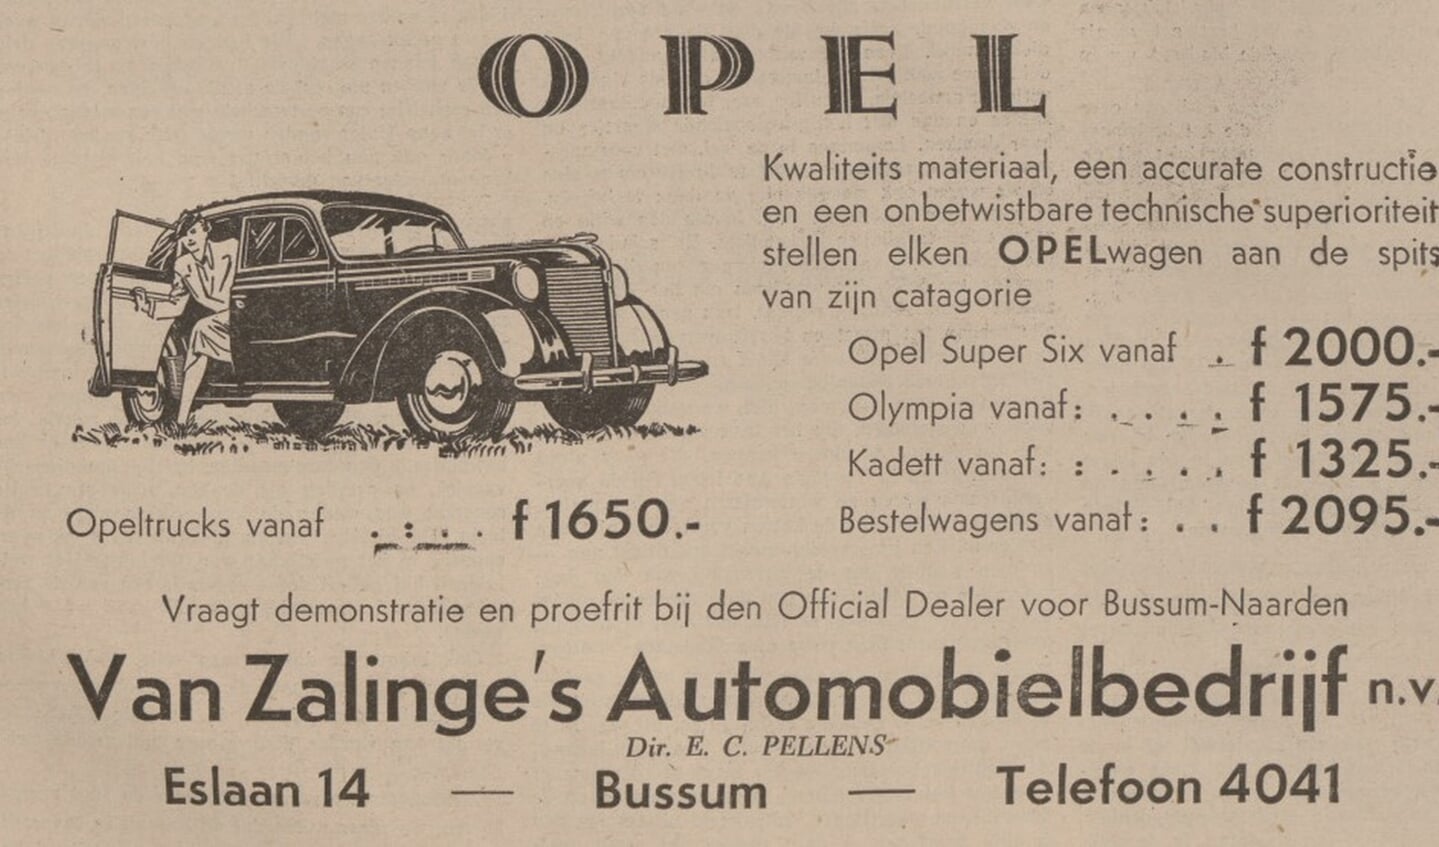 Advertentie van Pellens in Bussumsche Courant 1940.
